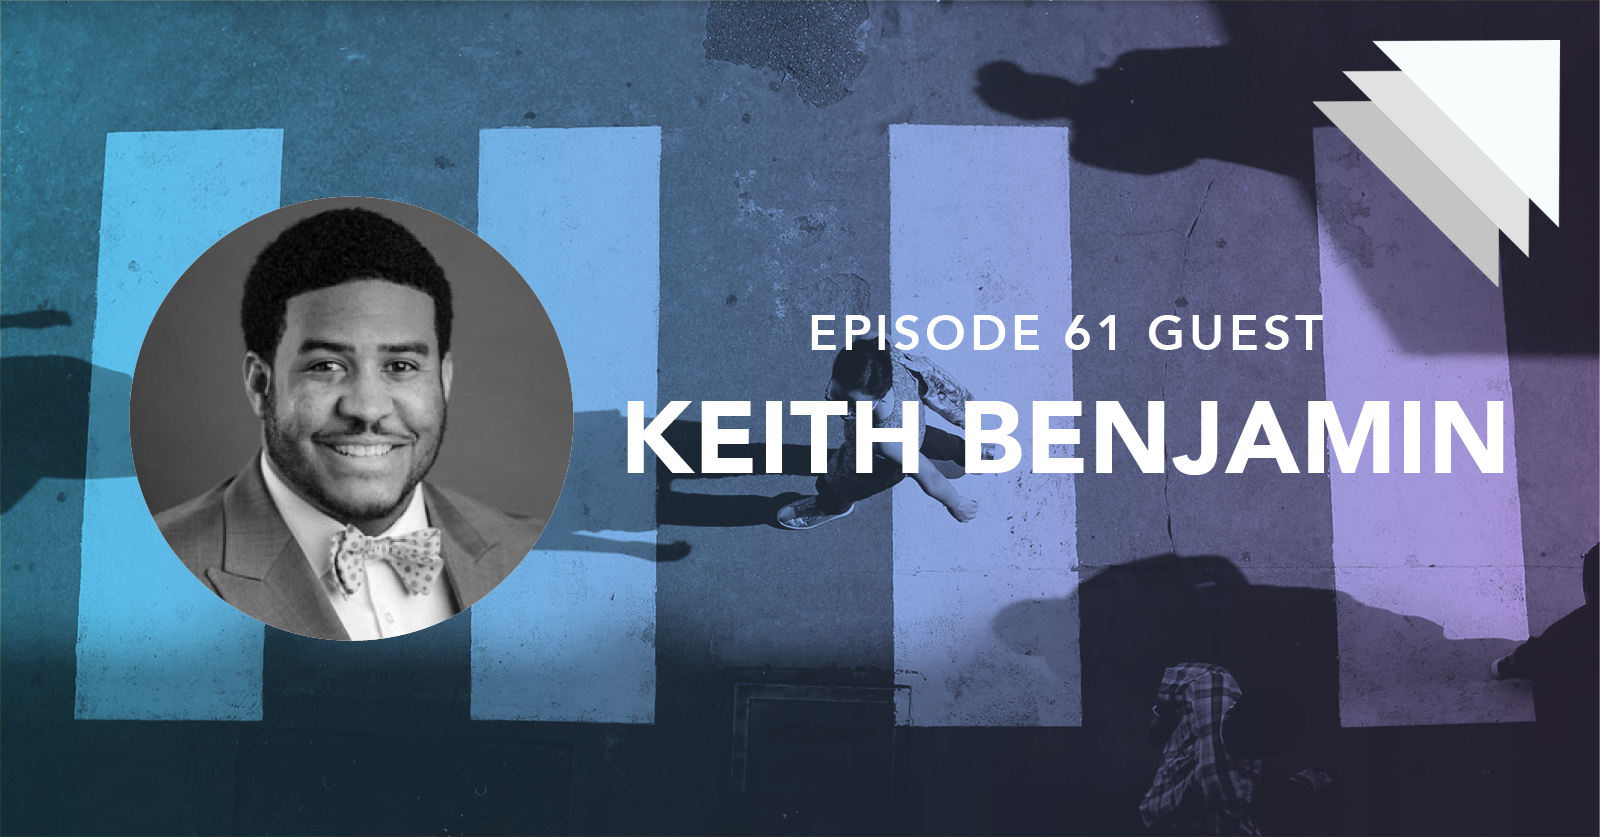 Episode 61 guest Keith Benjamin